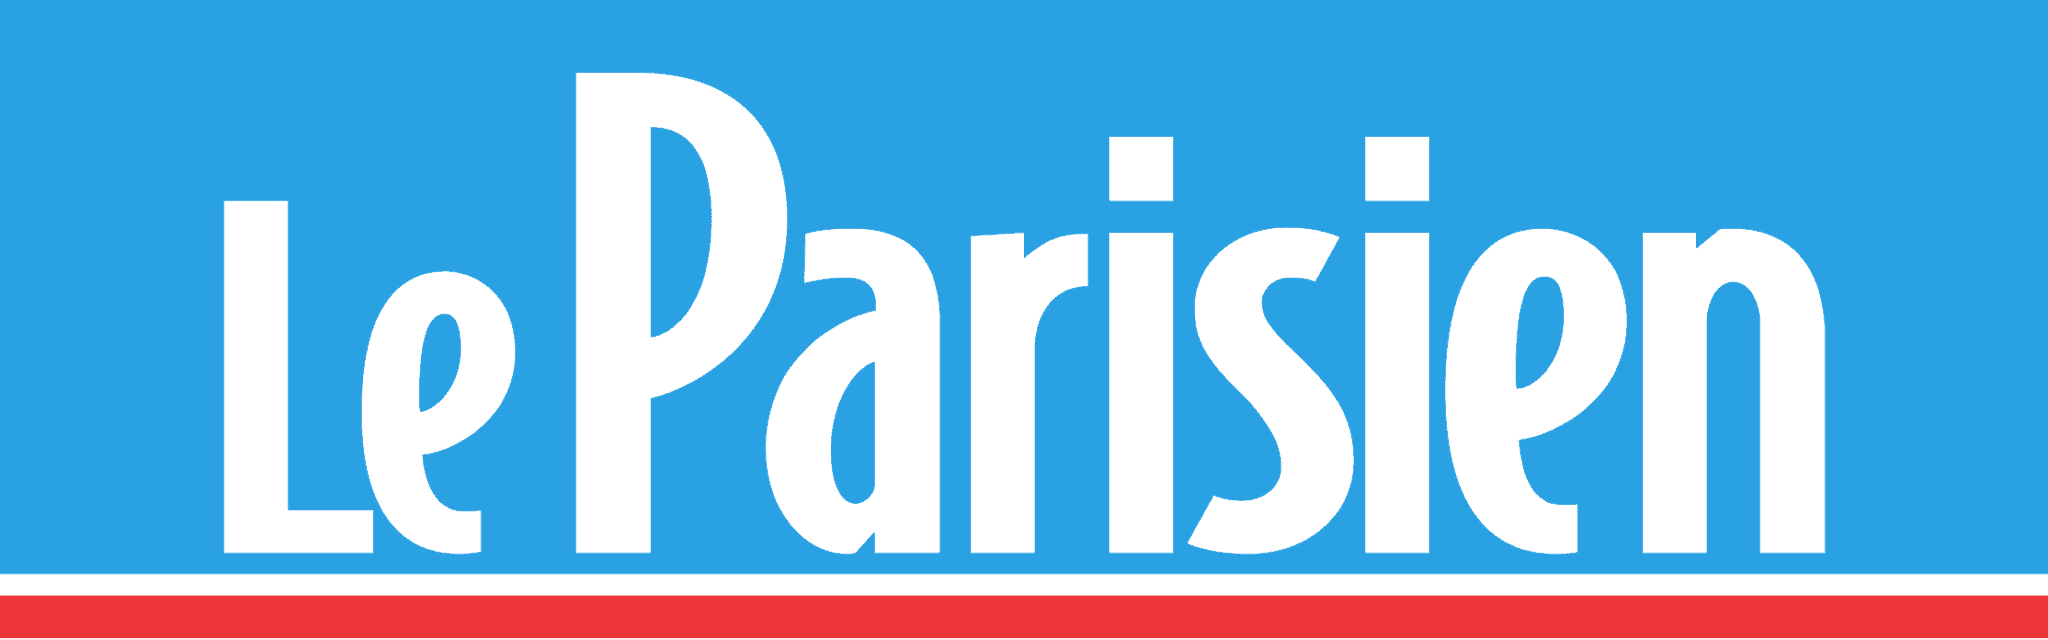 Le Parisien parle d’Aide et Action